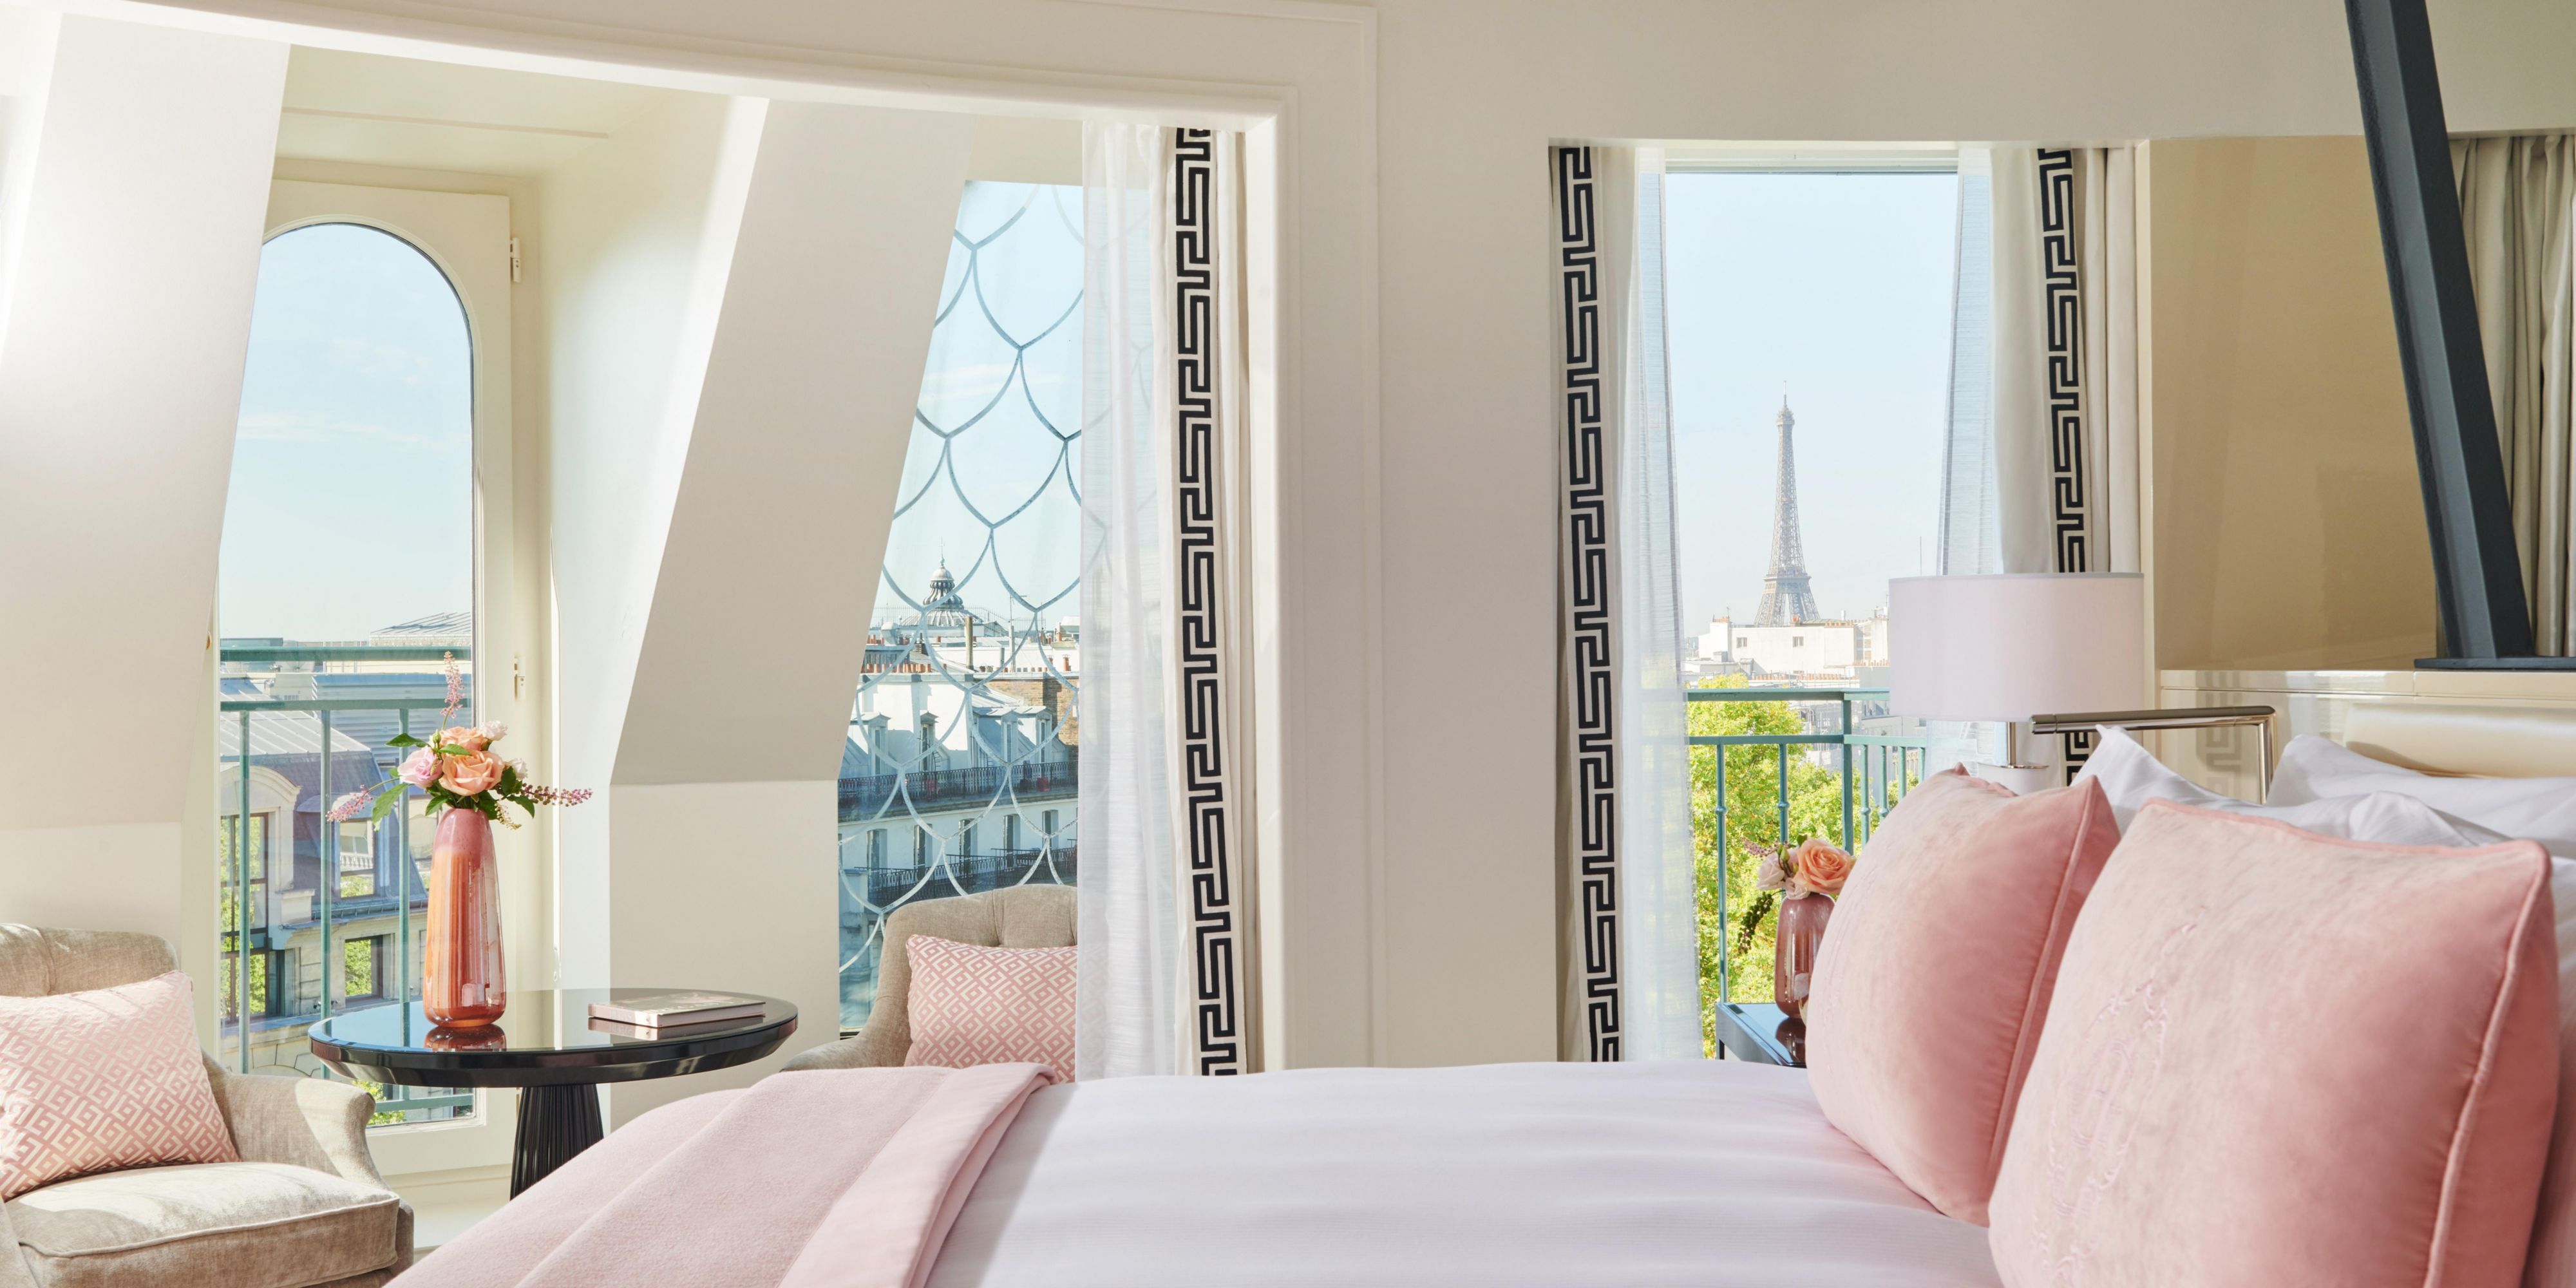 Les Suites Signatures offrent le luxe ultime avec une vue panoramique époustouflante sur le toit de l'Opéra Garnier ou la tour Eiffel et constituent un havre de paix à l'ambiance chic et contemporaine.